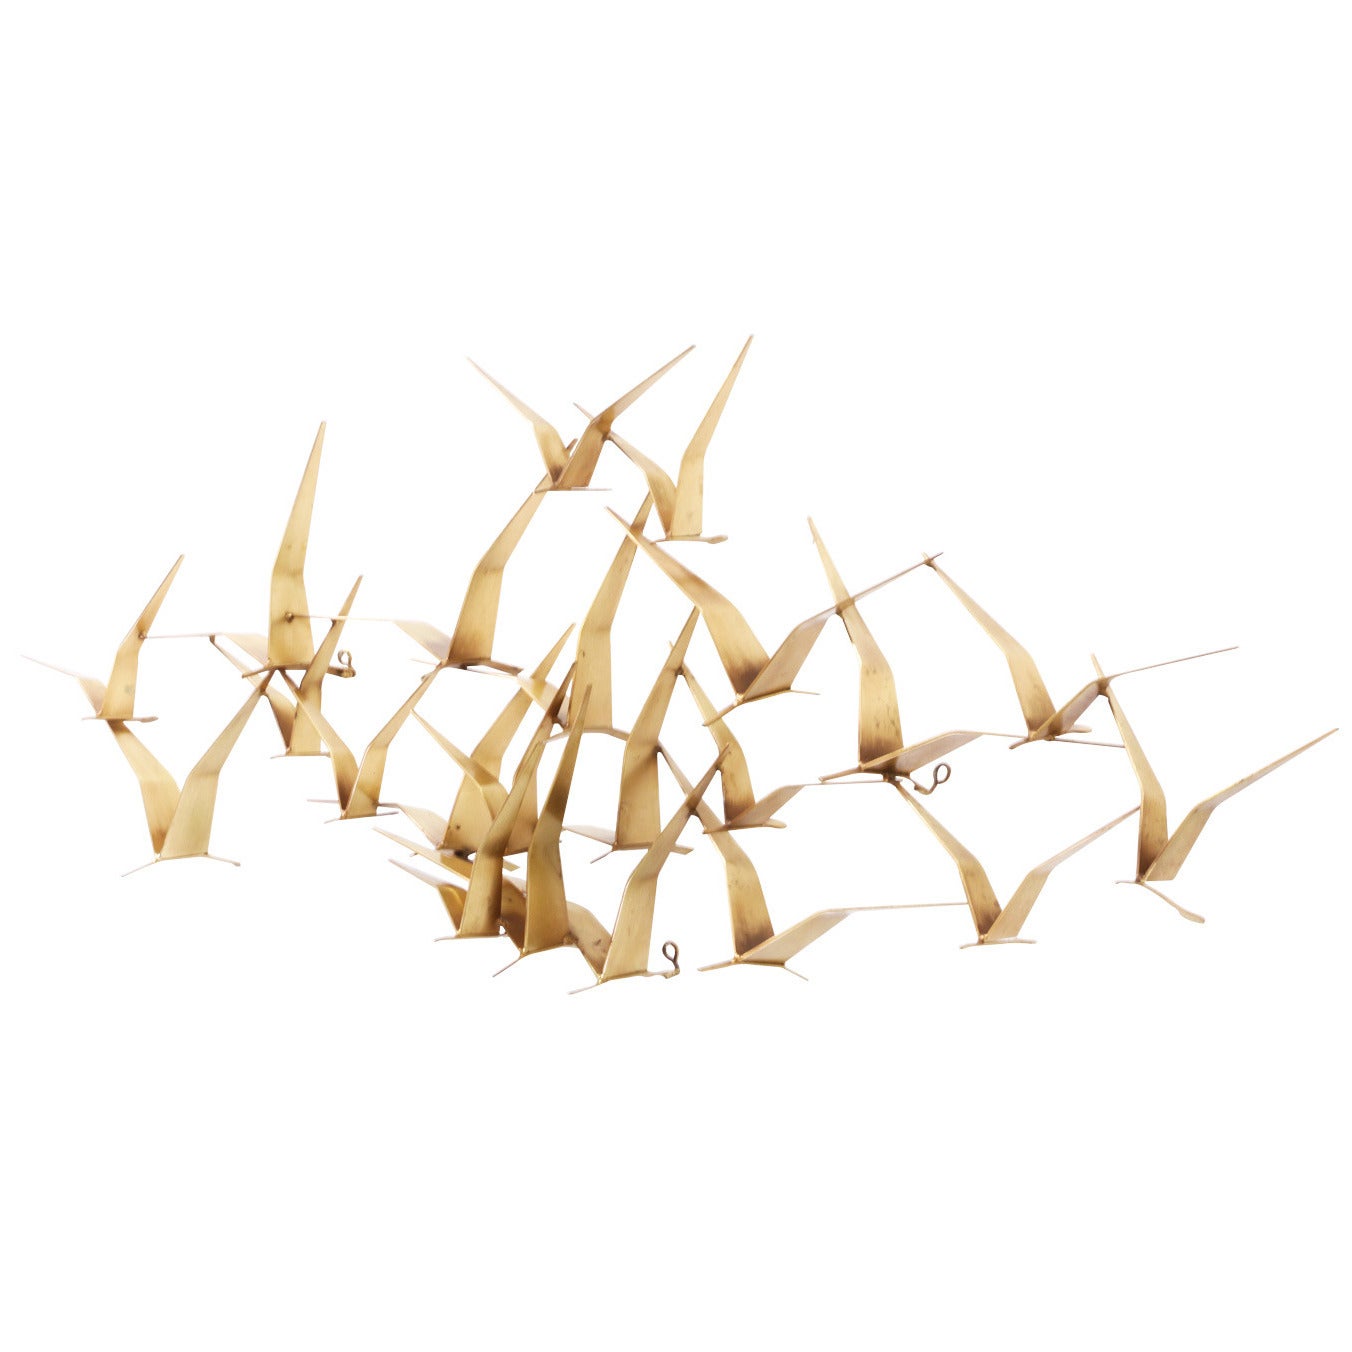 Curtis Jere Brass “Flock of Birds” Wall Art Sculpture for Artisan House